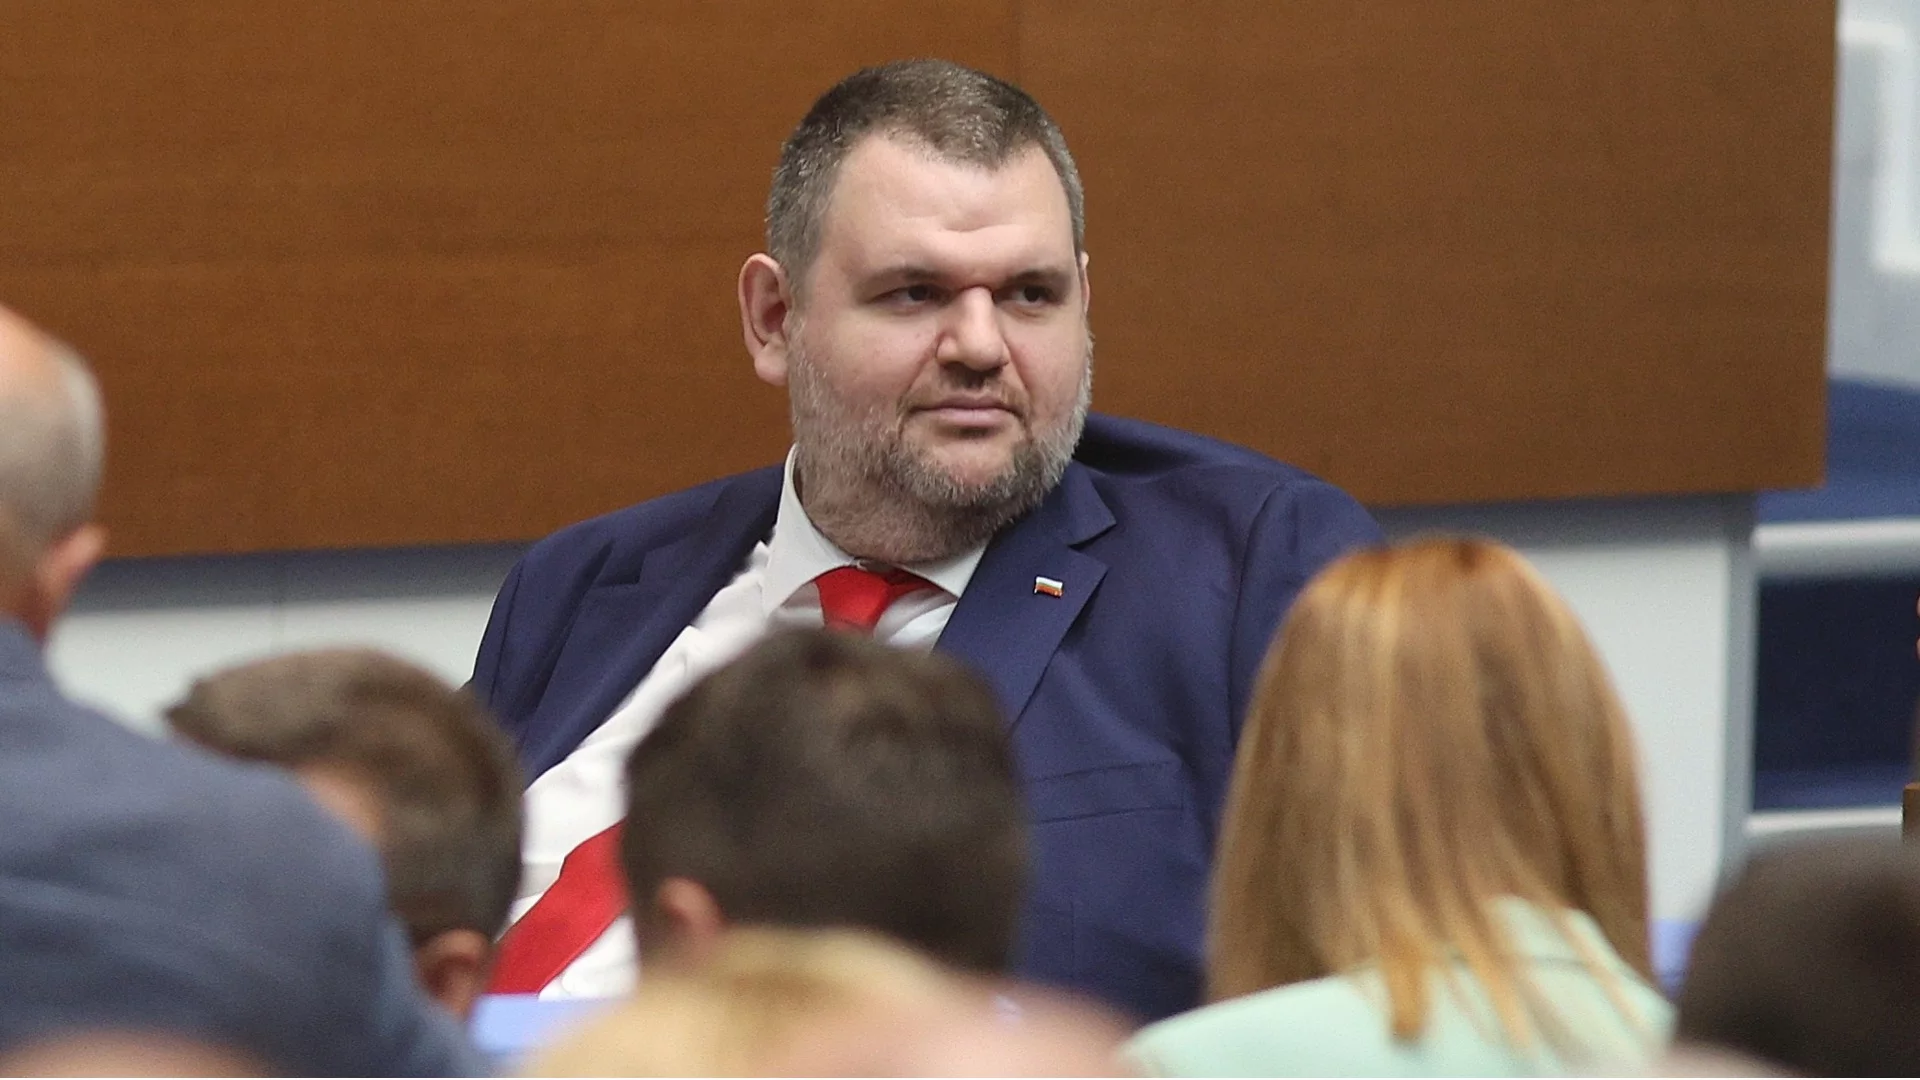 ДПС изключи депутатка от групата си - подозират връзки с арестувания Сали Табаков (СНИМКА)